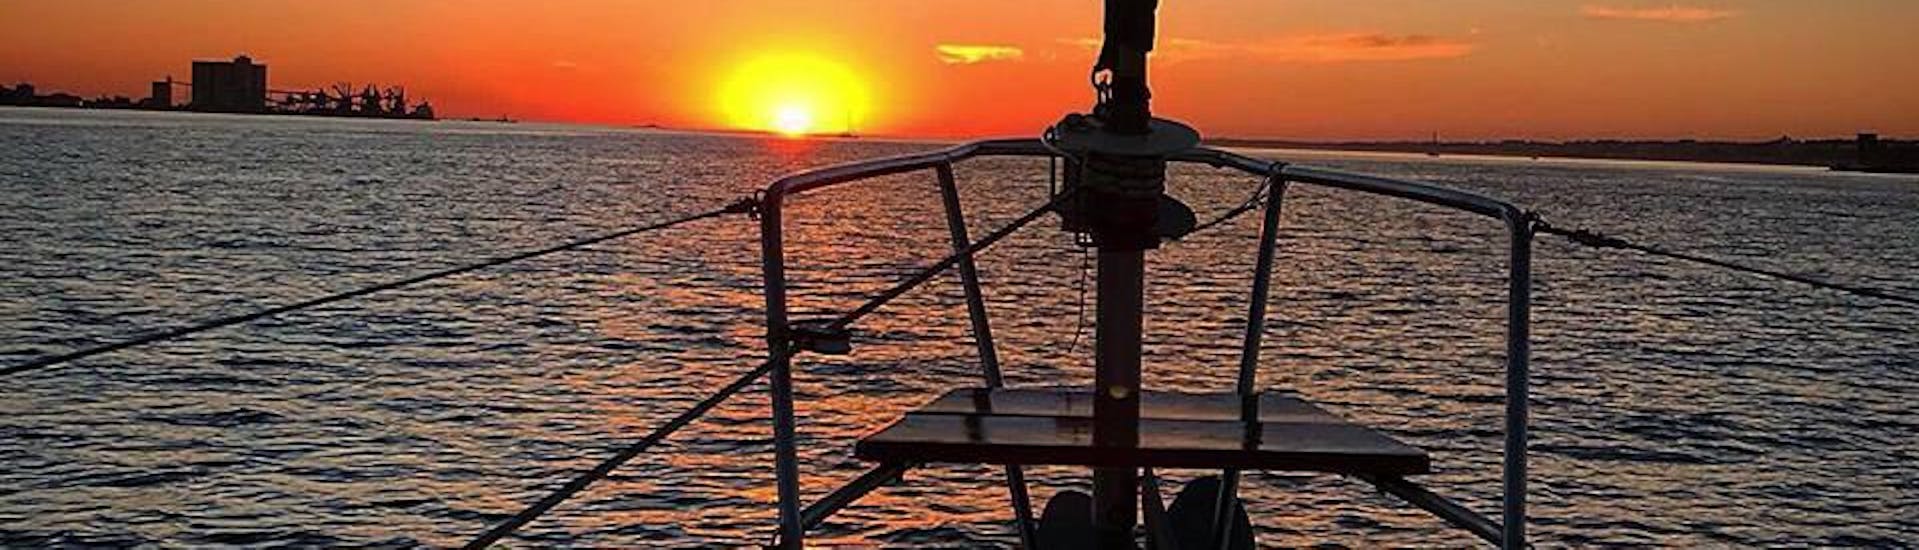 Gita privata in barca a vela da Lisbona a Tago al tramonto e visita turistica.